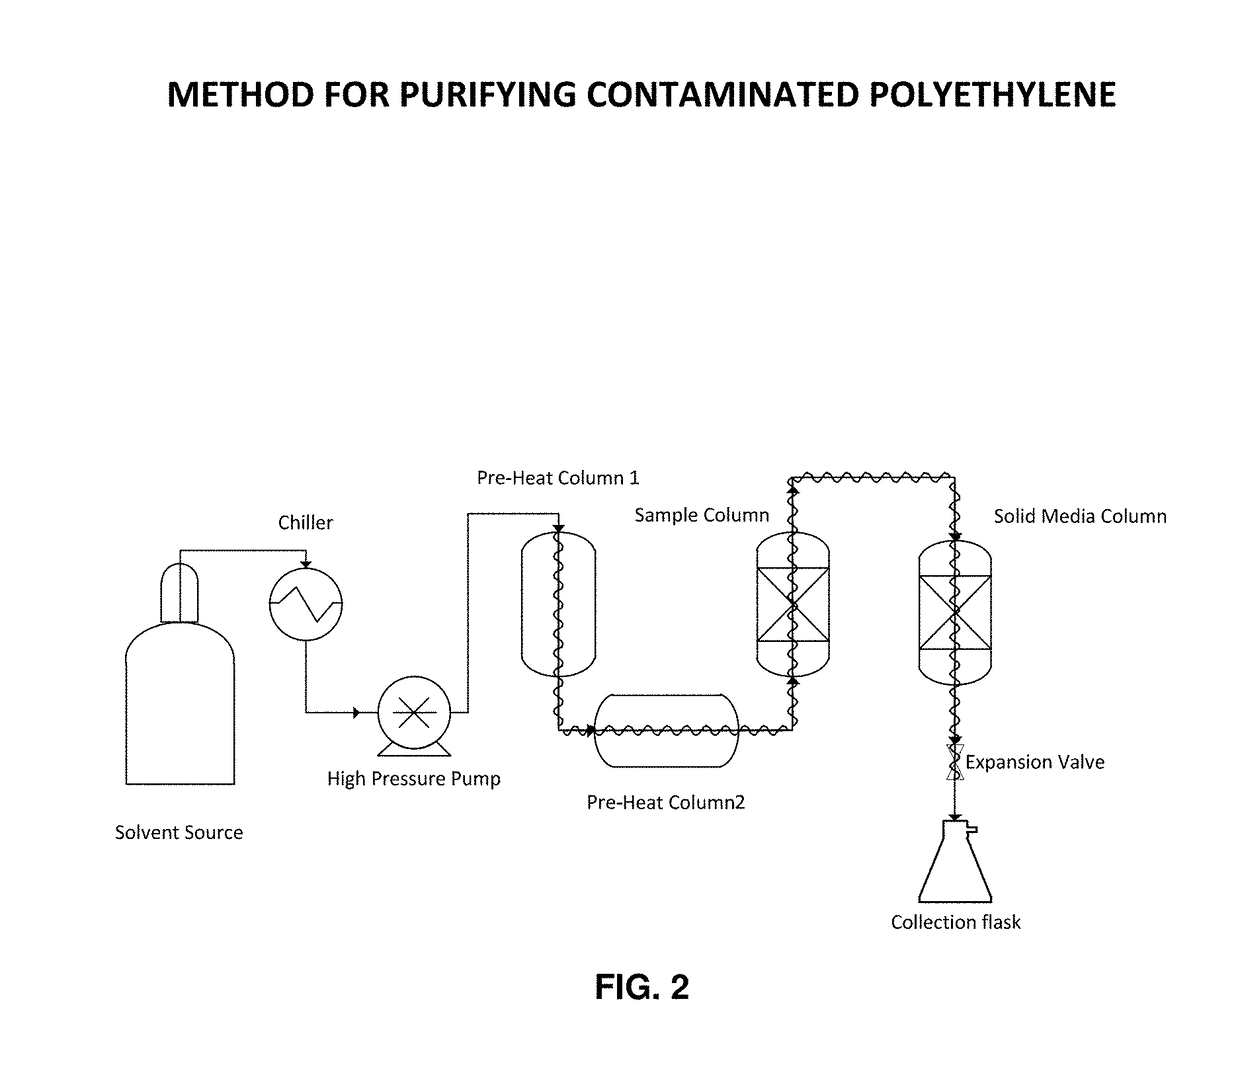 Method for purifying contaminated polyethylene